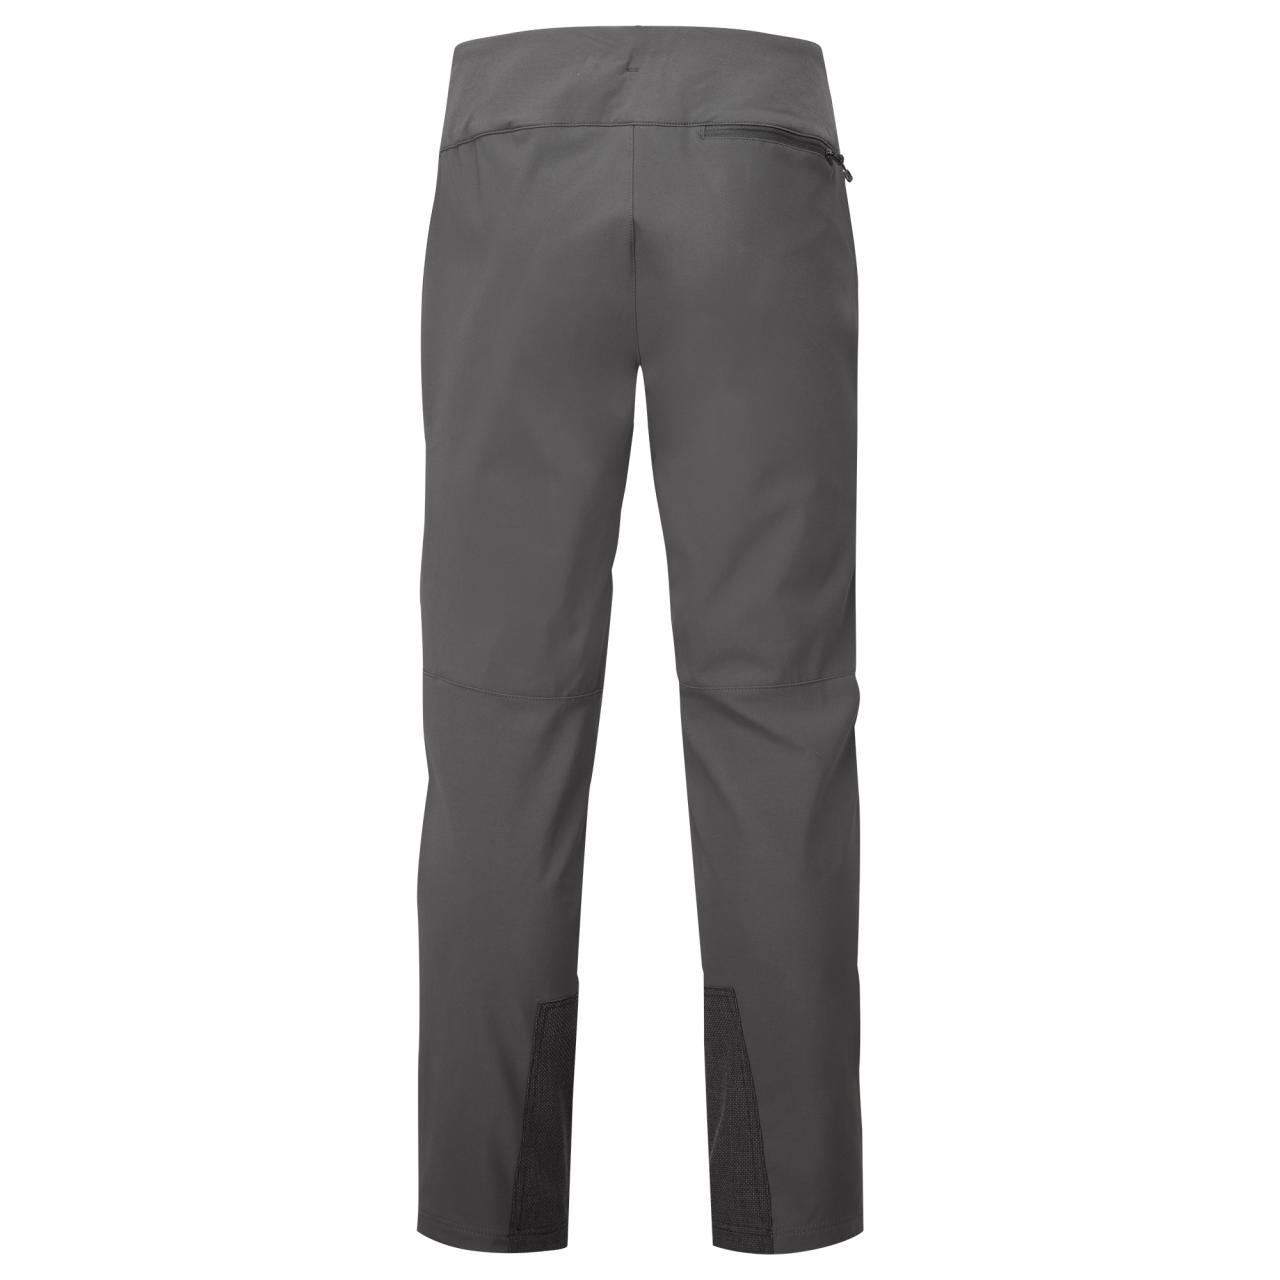 TENACITY XT PANTS SHORT LEG-MIDNIGHT GREY-34/L pánské kalhoty tmavě šedé